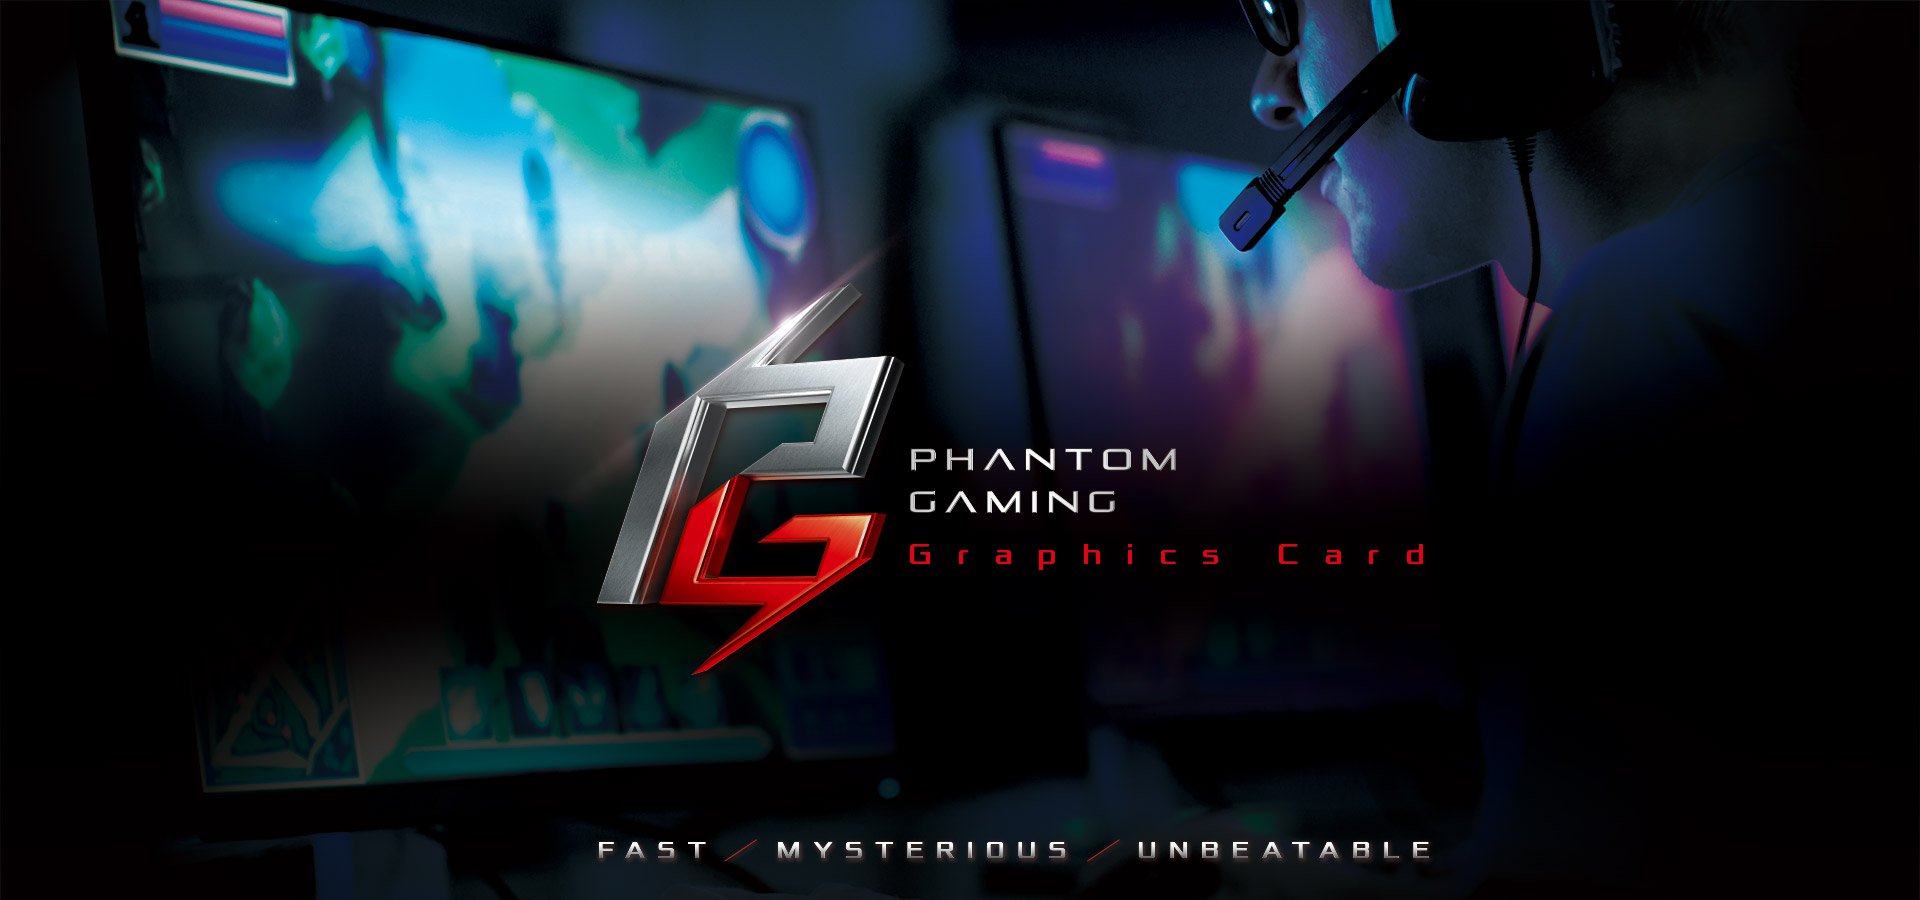 Asrock Phantom Gaming X Radeon Rx590 8g Oc